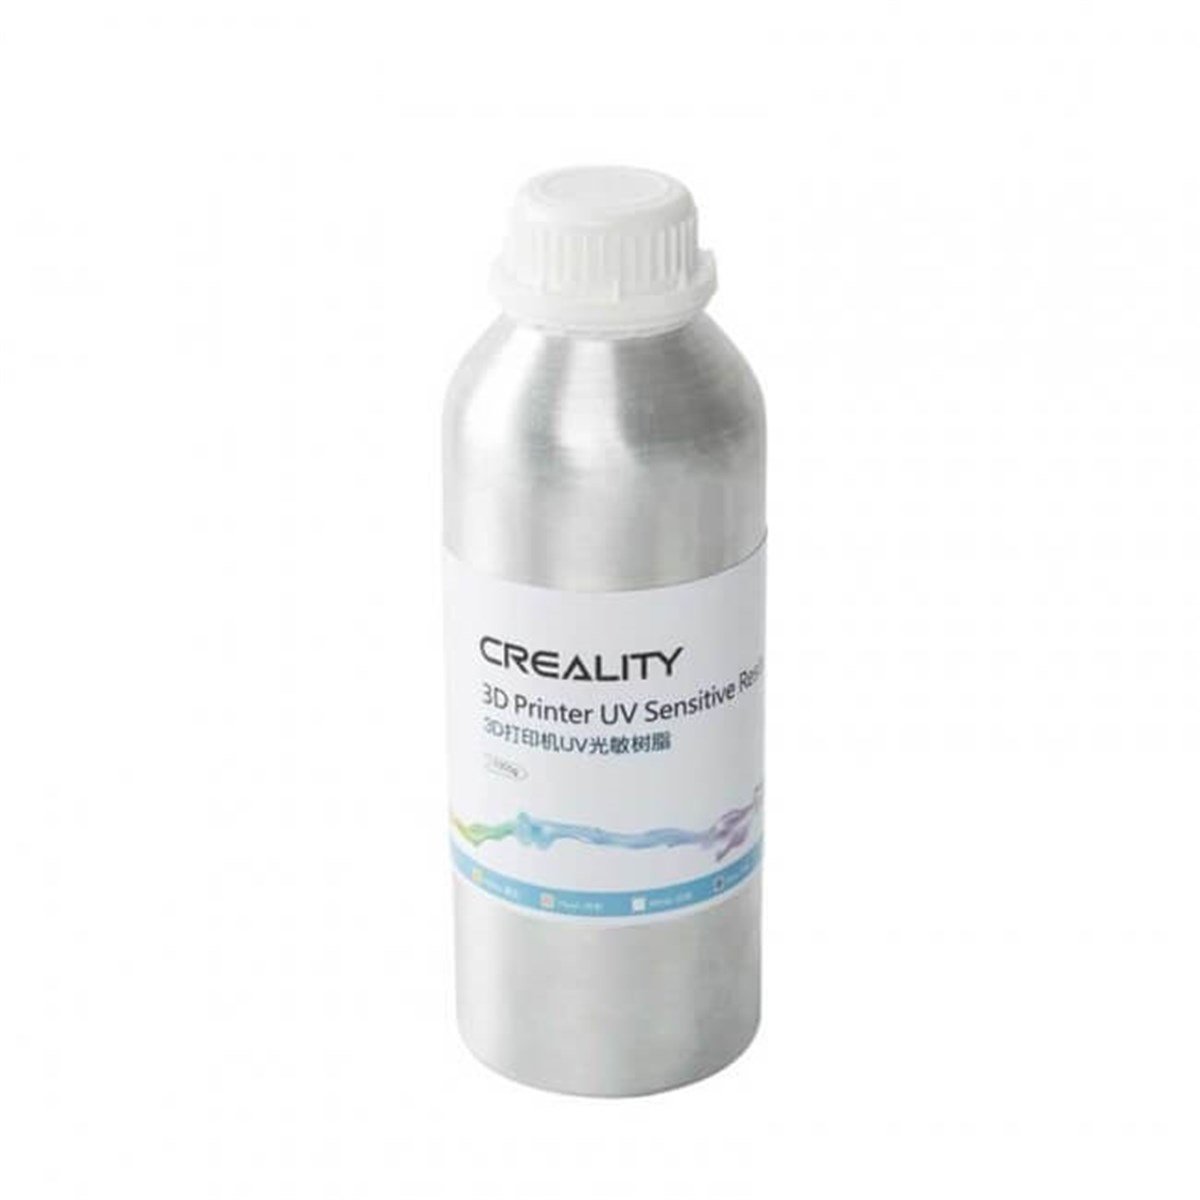 Creality Yeşil UV Reçine 1 Kg - SLA